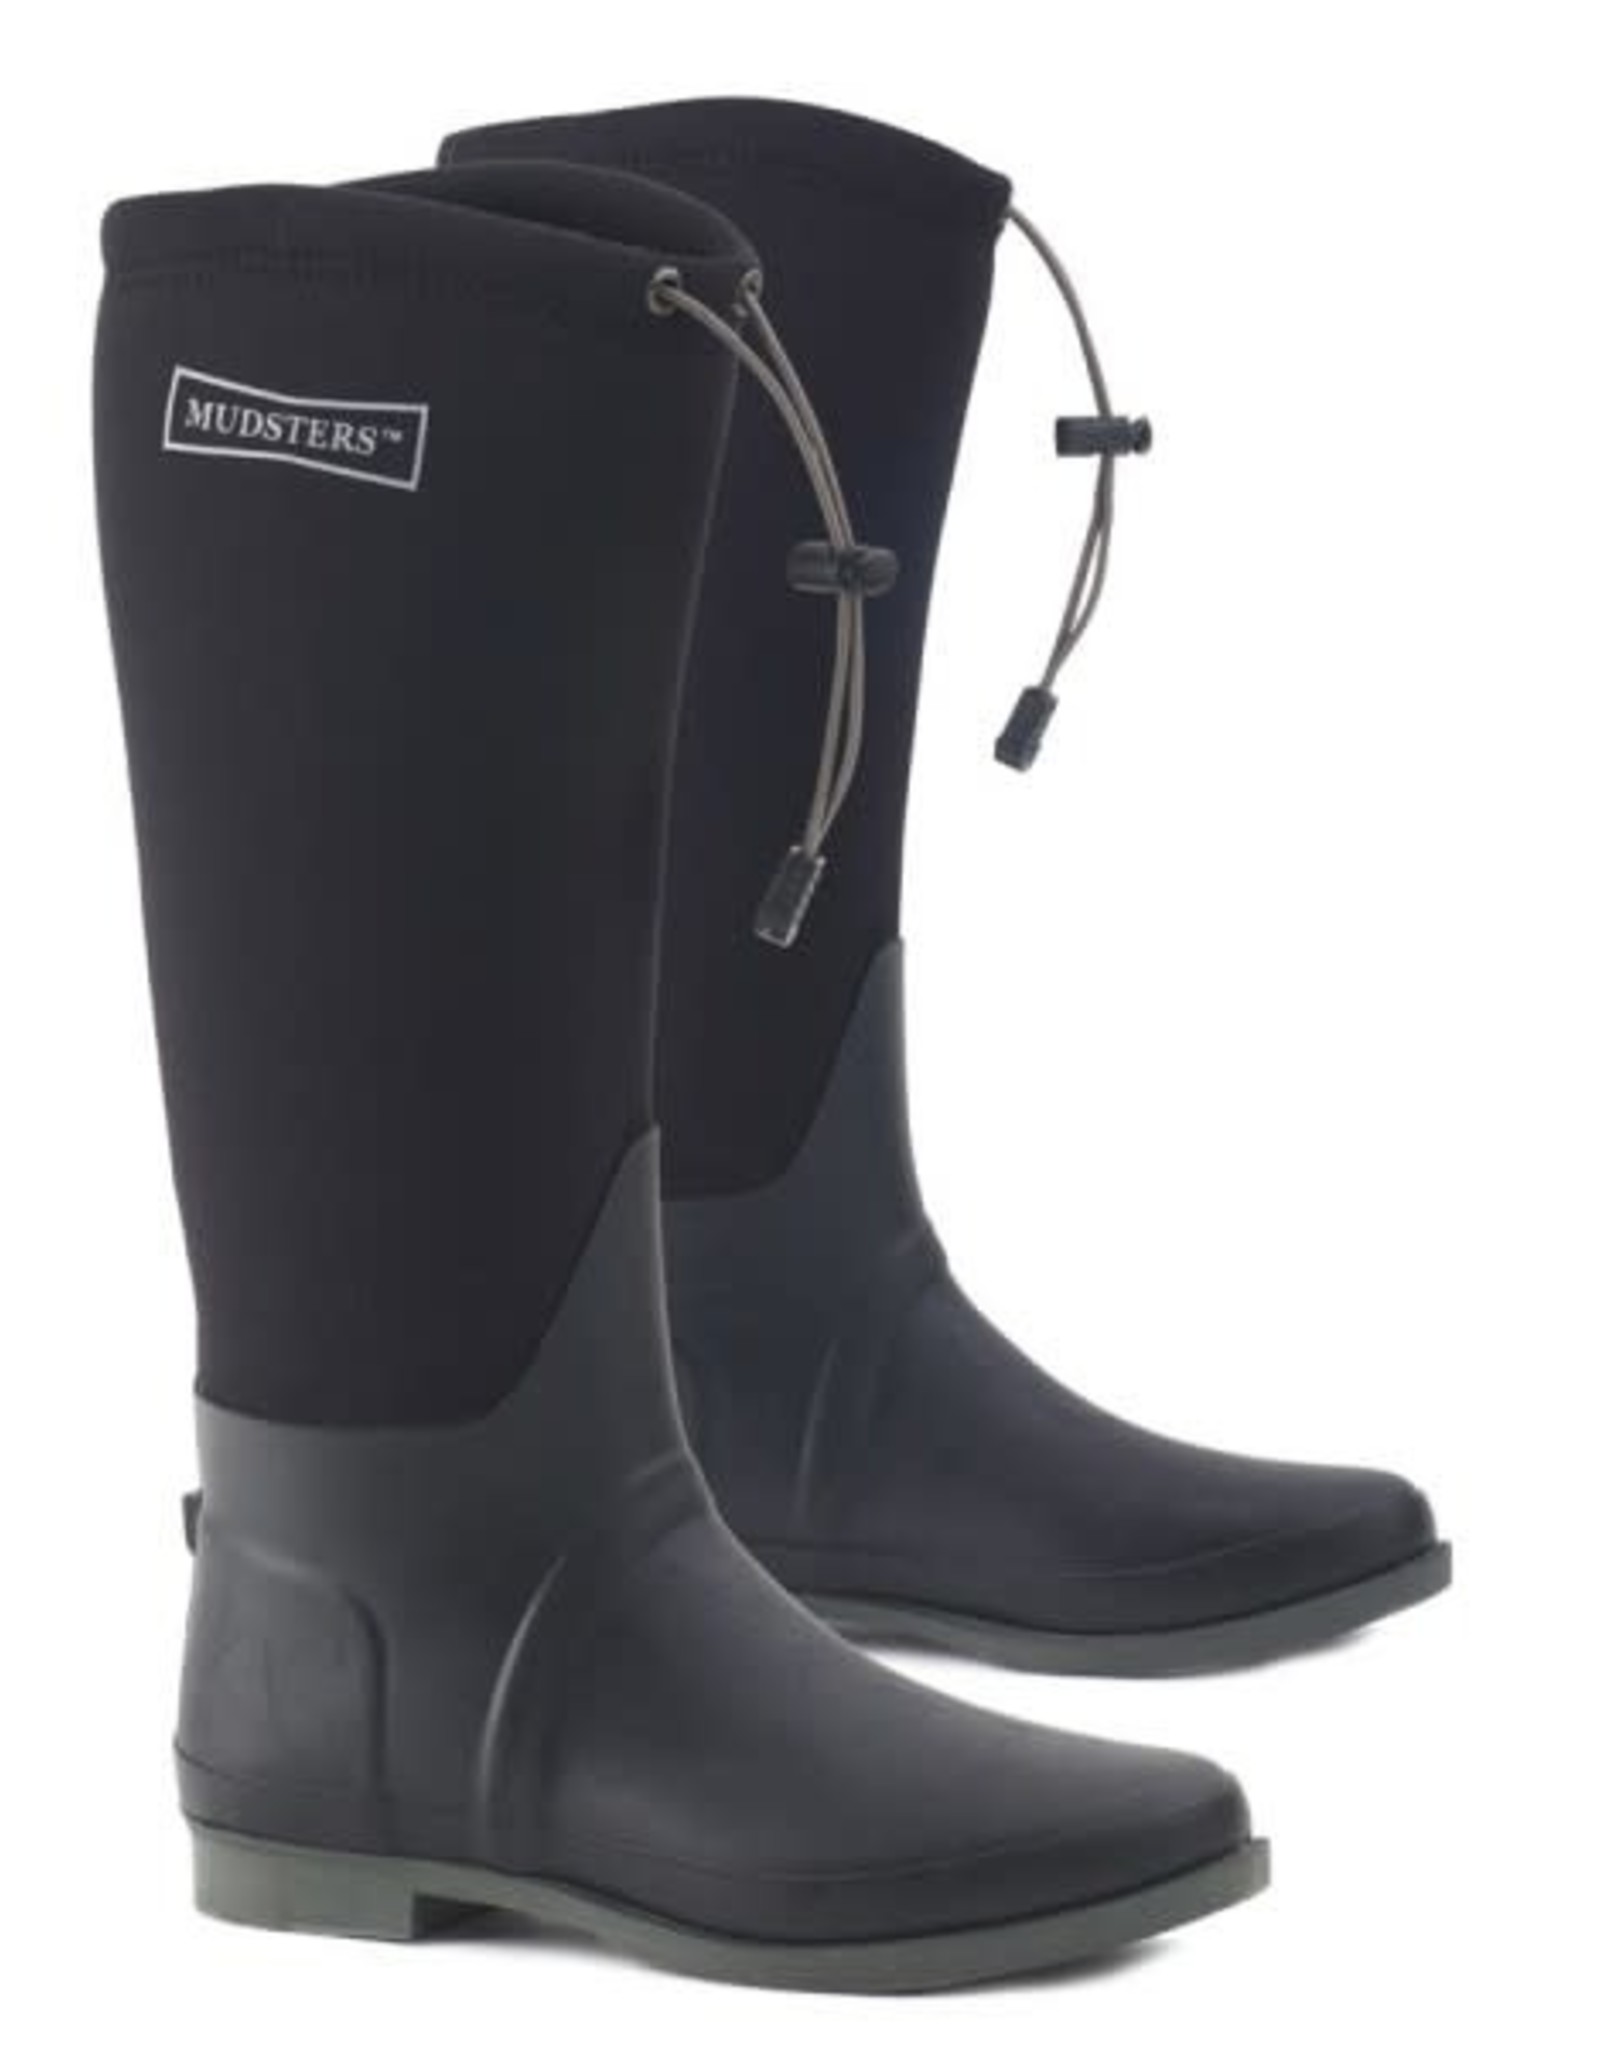 Ovation Mudster Comfort Rider Boots